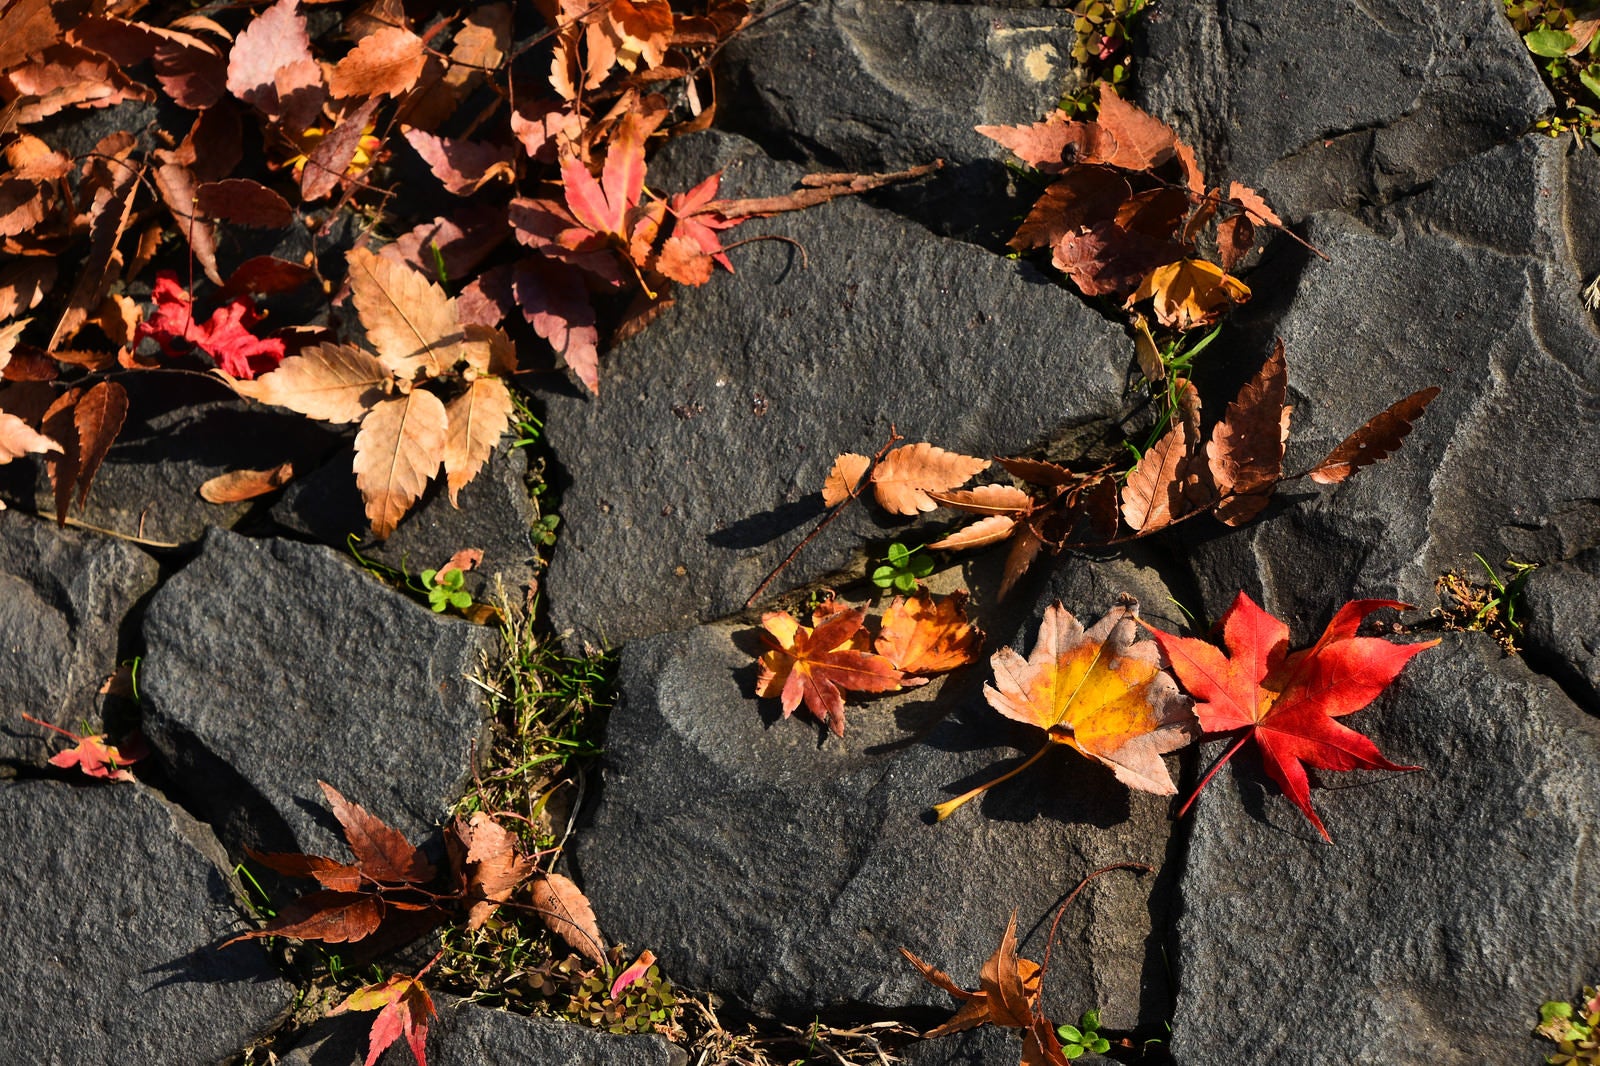 「石畳に落ちる枯葉」の写真